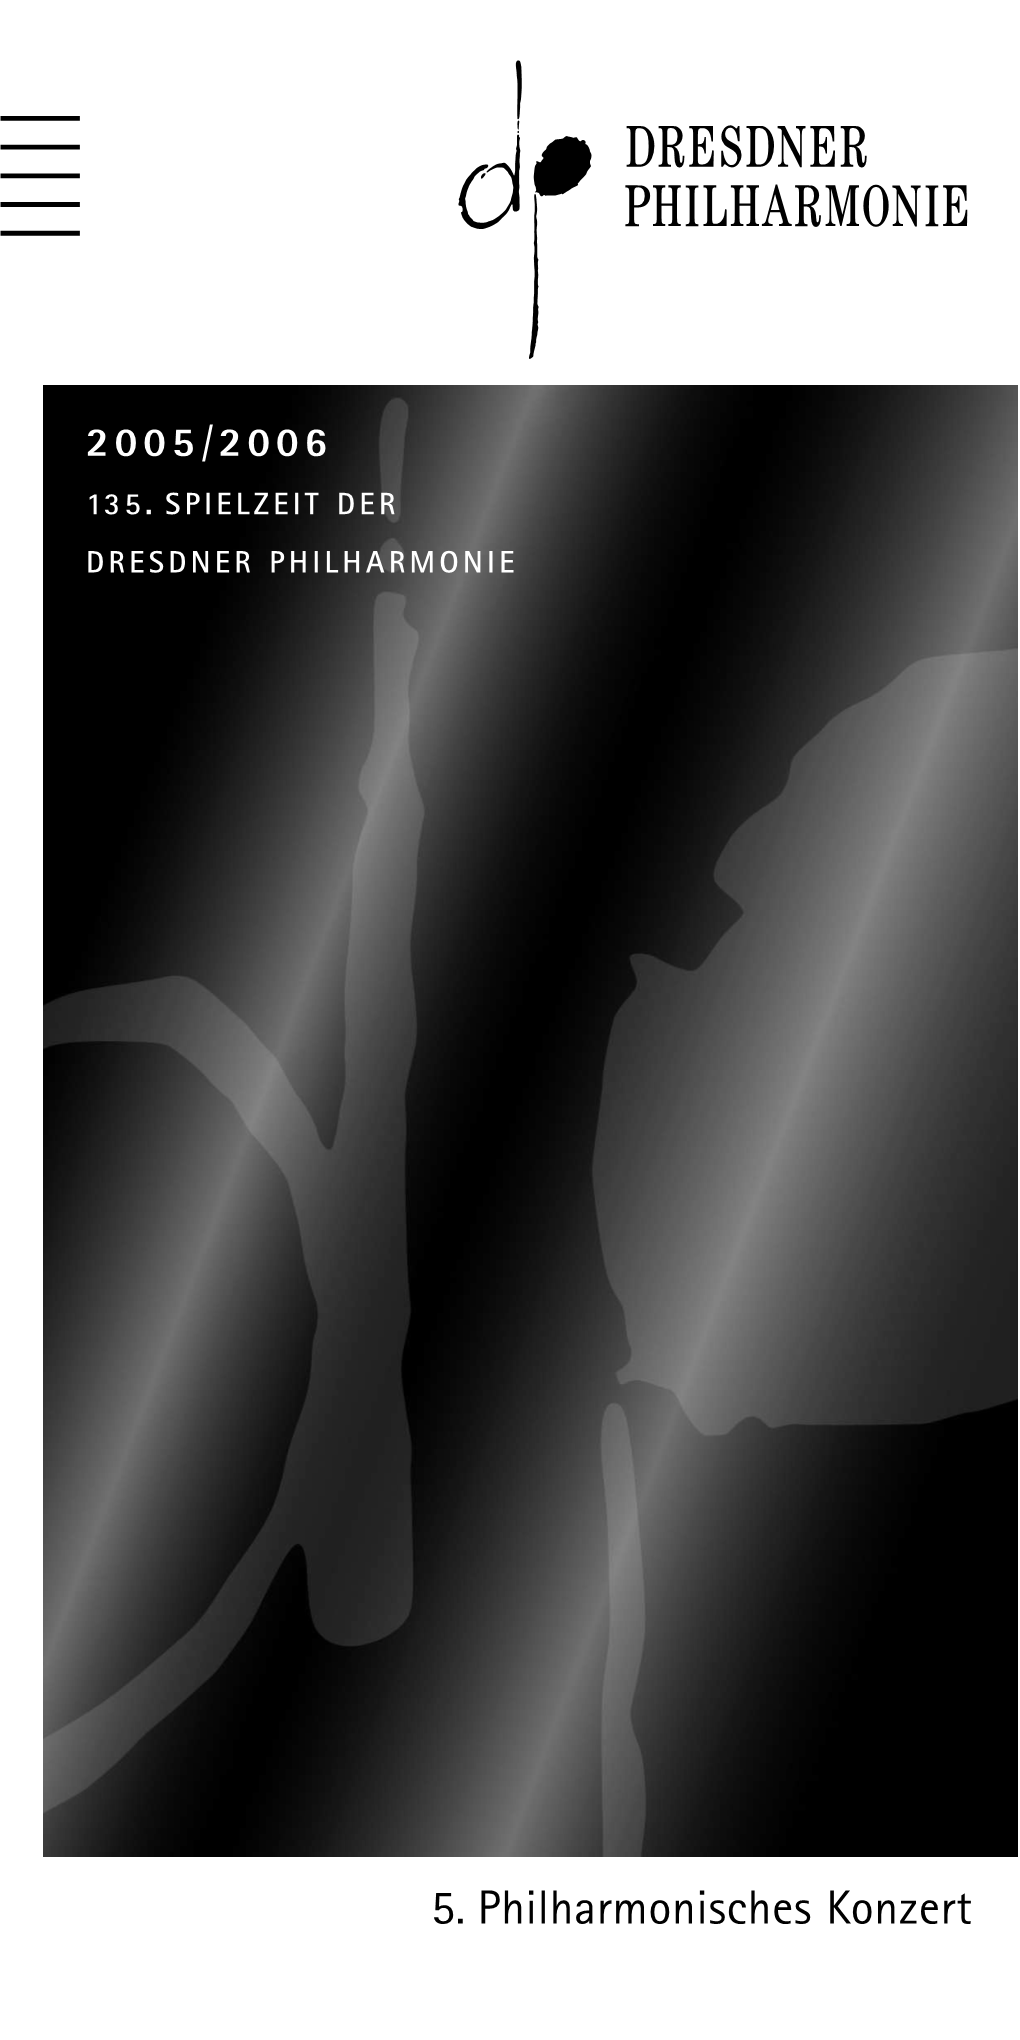 5. Philharmonisches Konzert Progr PK5 11.+12.3.06 01.03.2006 15:22 Uhr Seite 2 (Schwarz/Pr Progr PK5 11.+12.3.06 01.03.2006 15:38 Uhr Seite 3 (Schwarz/Pr